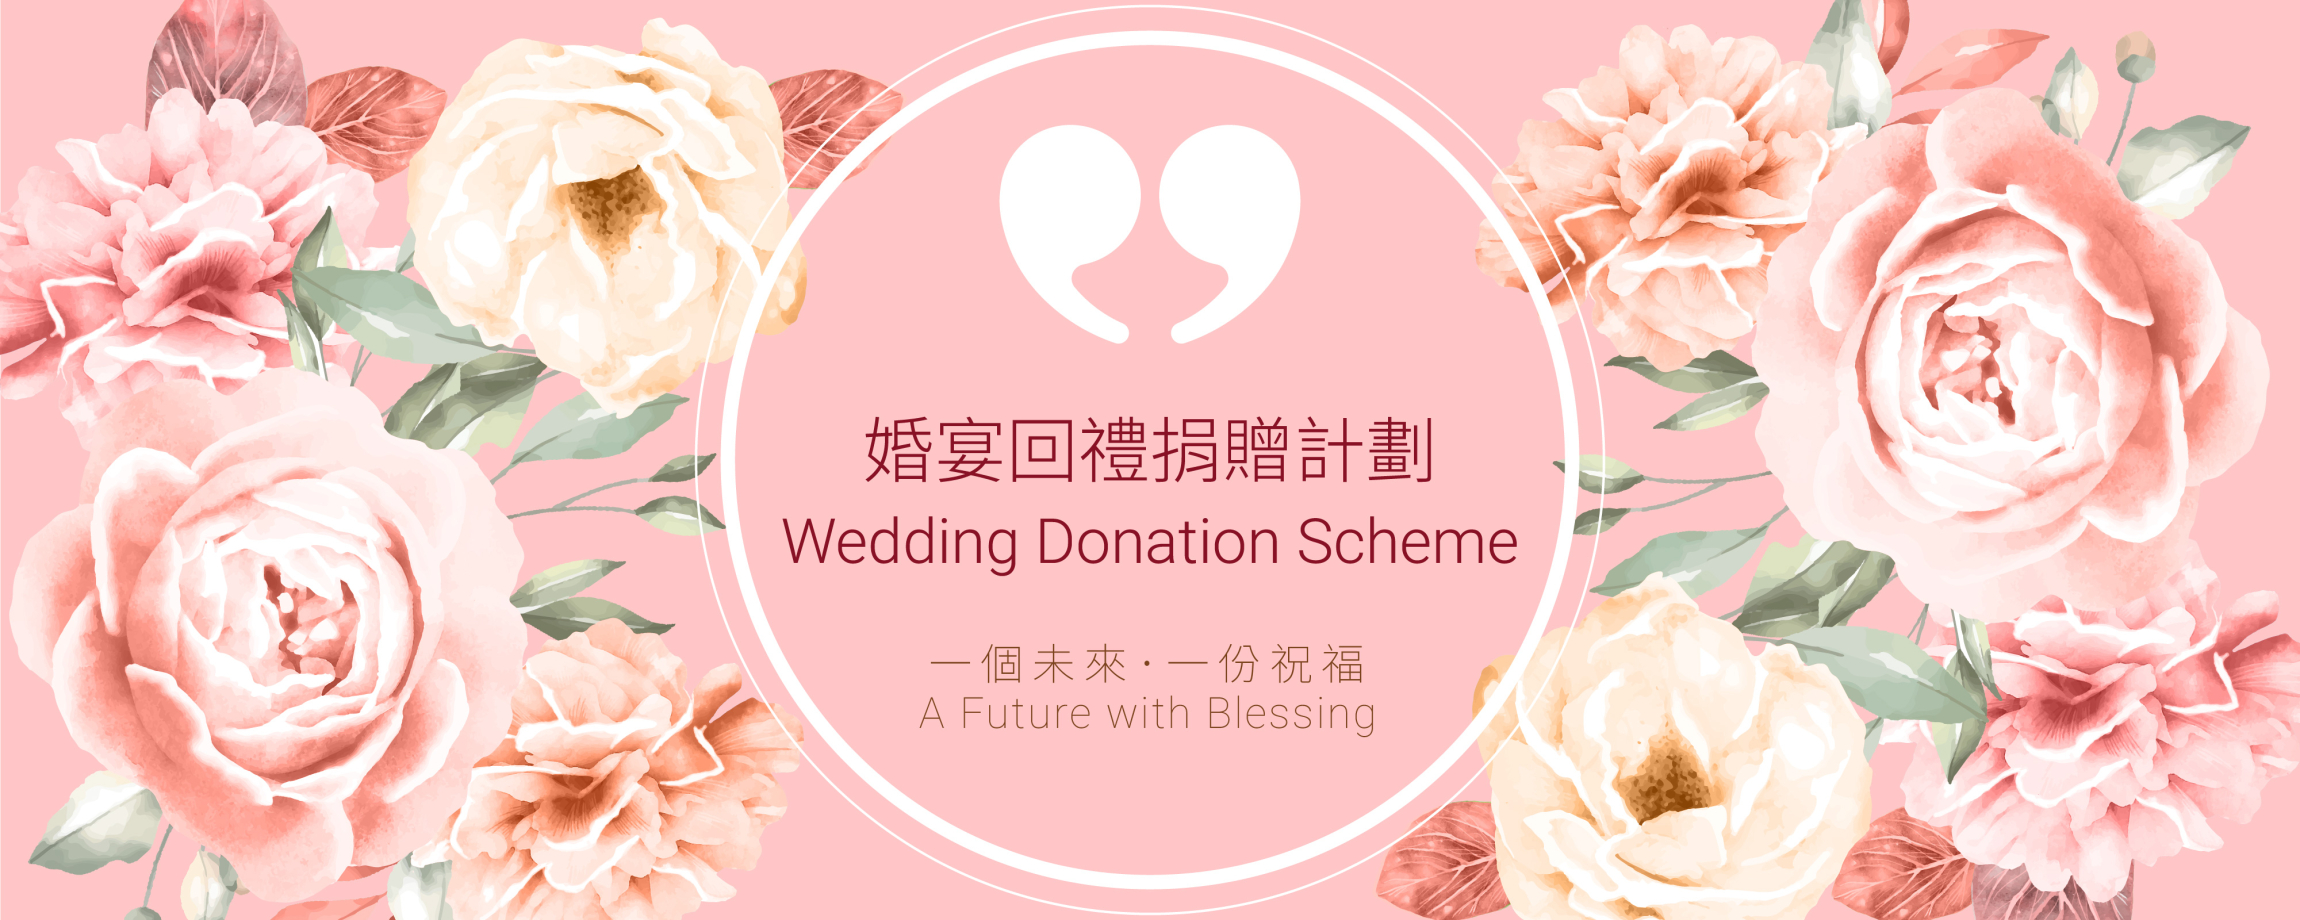 本頁圖片/檔案 - website banner wedding donation